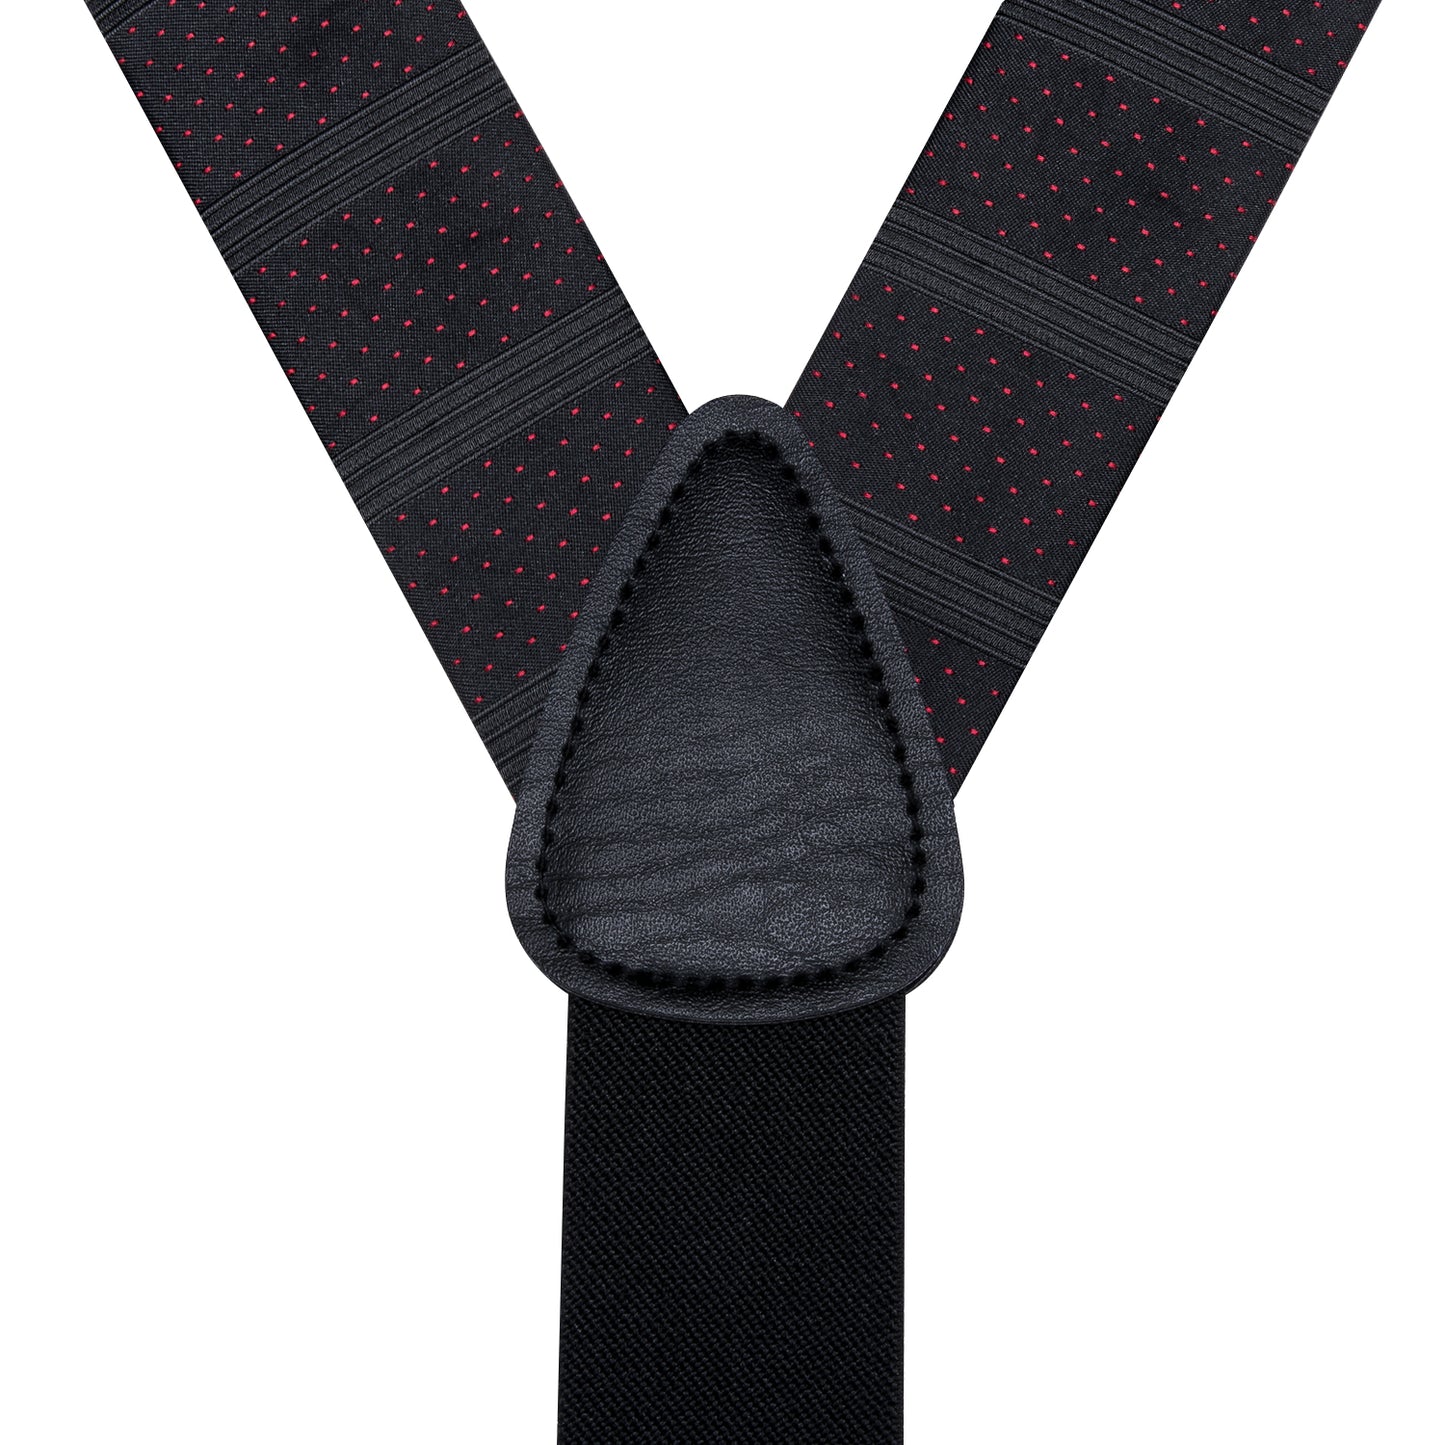 BD3010 Men's Braces Designer Clip Suspender Set [Black Dots]